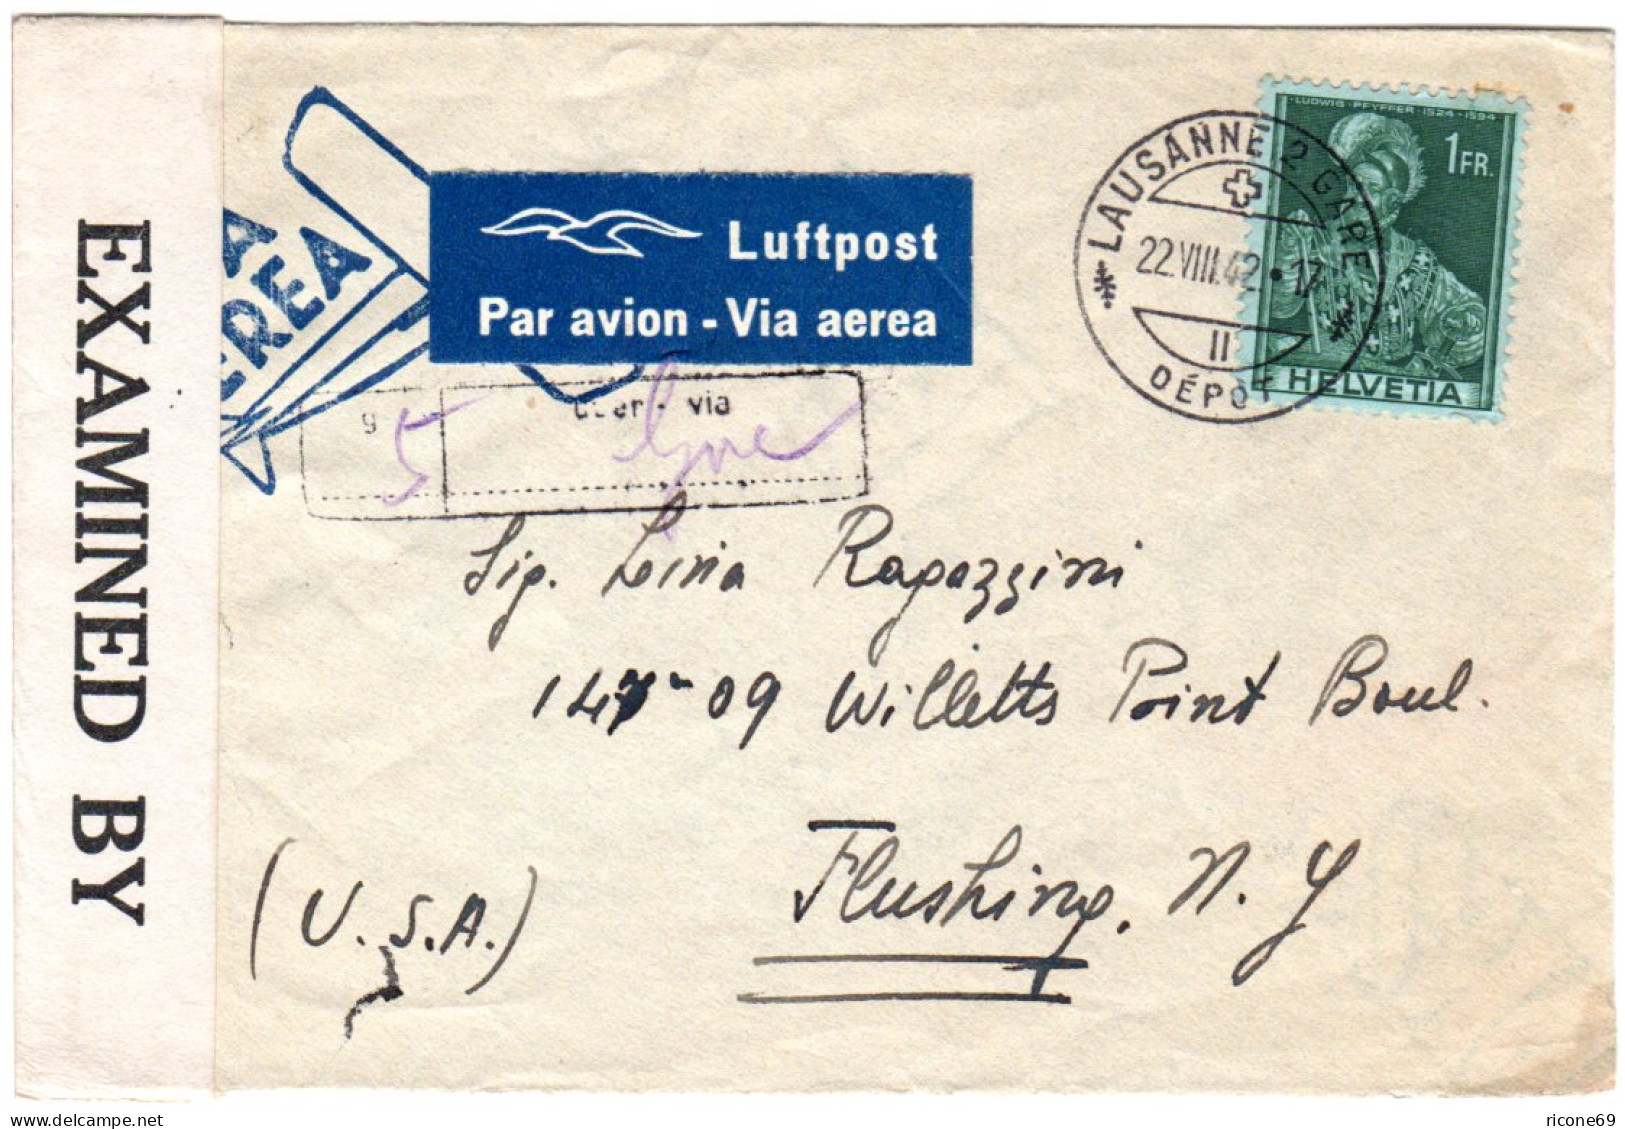 Schweiz 1942, EF 1 Fr. Auf Luftpost Zensur Brief V. Lausanne Via Genf N. USA - Briefe U. Dokumente